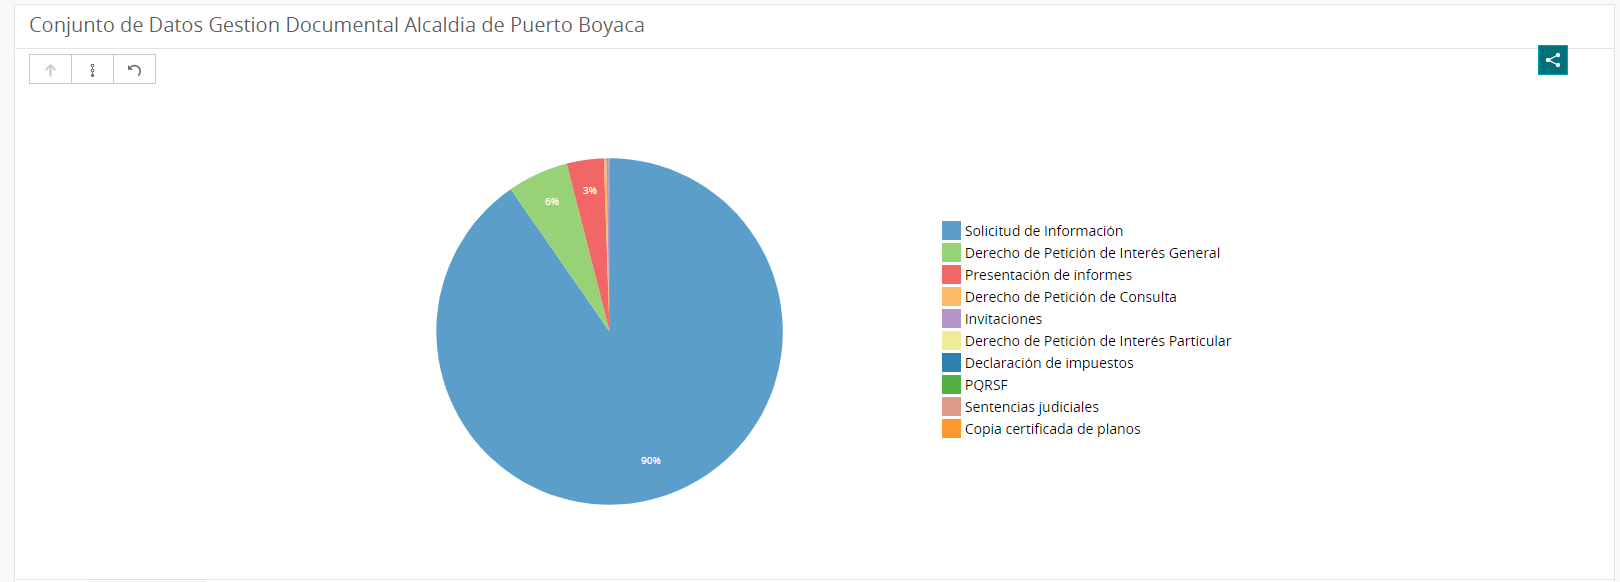 Conjunto de Datos de Gestion Documental Alcaldia de Puerto Boyacá